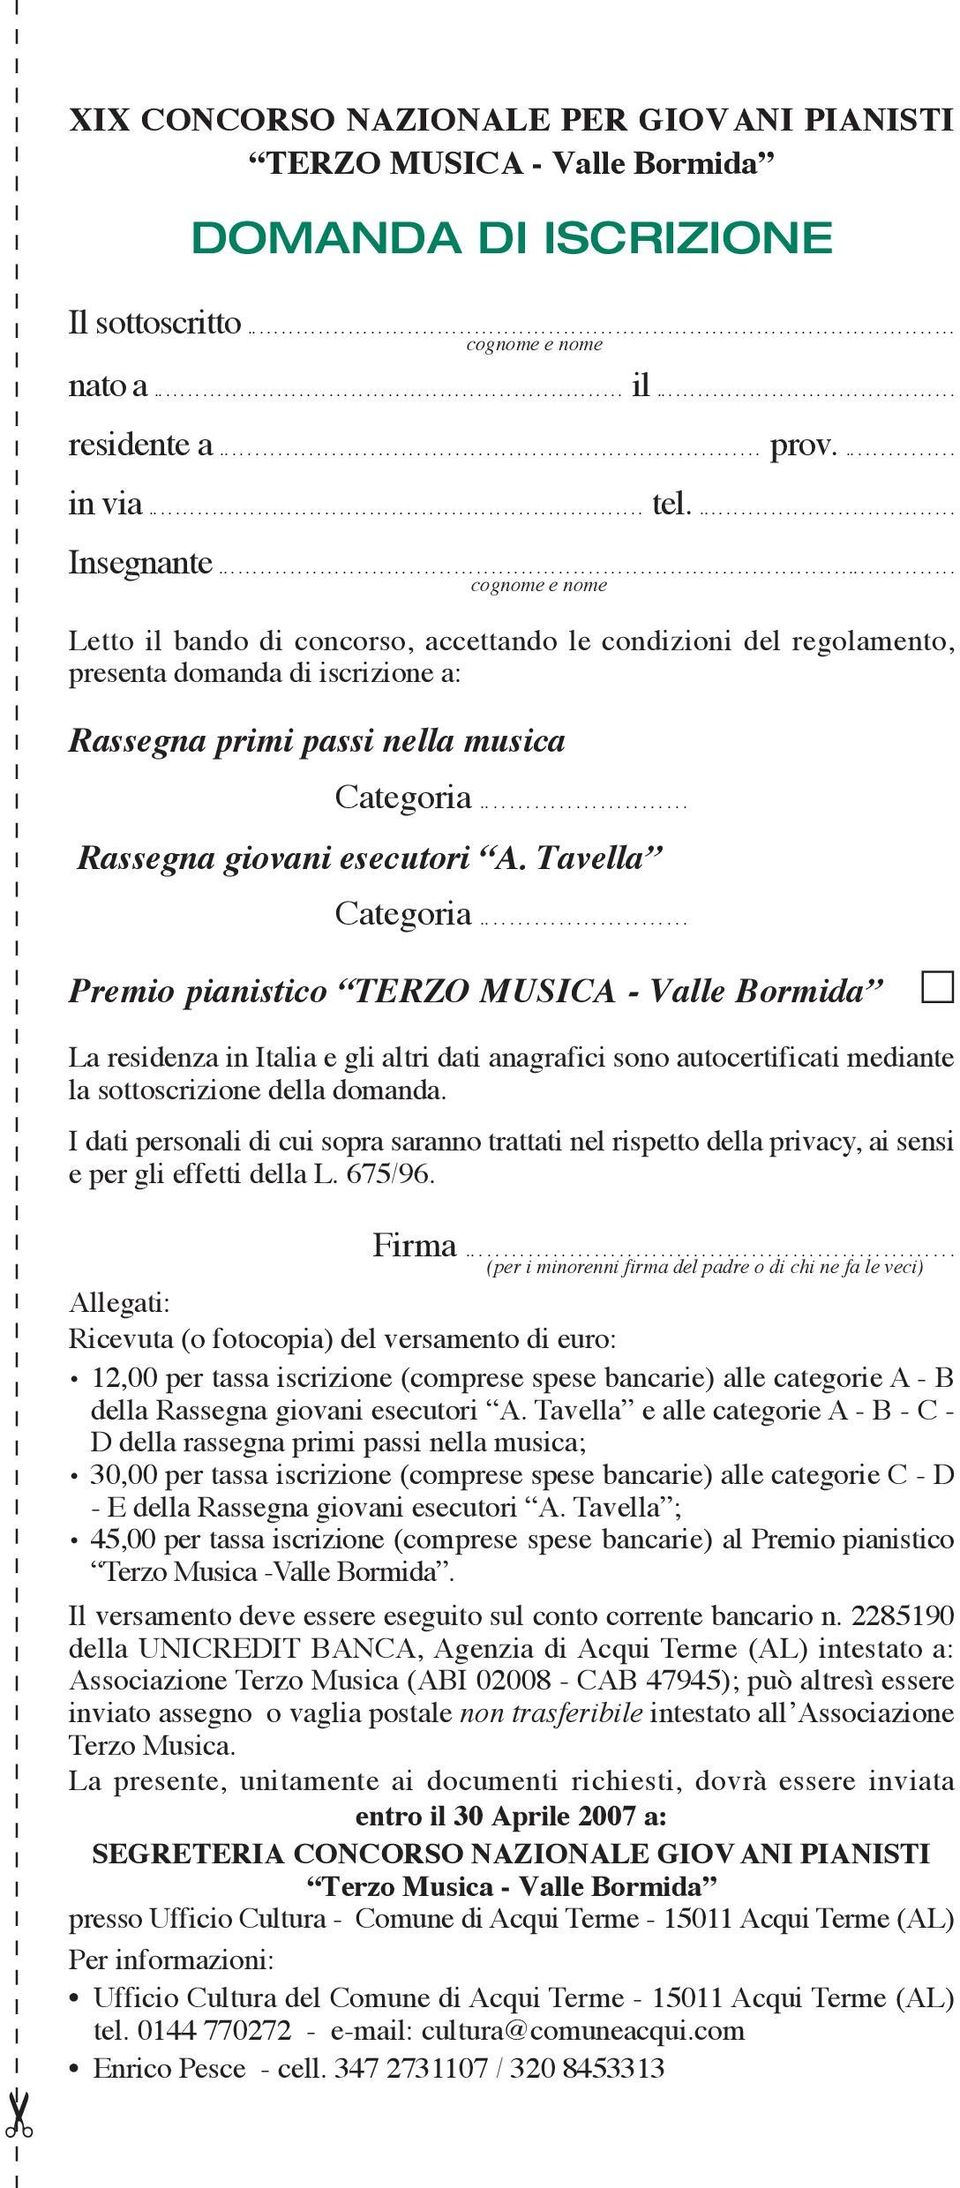 Tavella Categoria... Premio pianistico TERZO MUSICA - Valle Bormida La residenza in Italia e gli altri dati anagrafici sono autocertificati mediante la sottoscrizione della domanda.